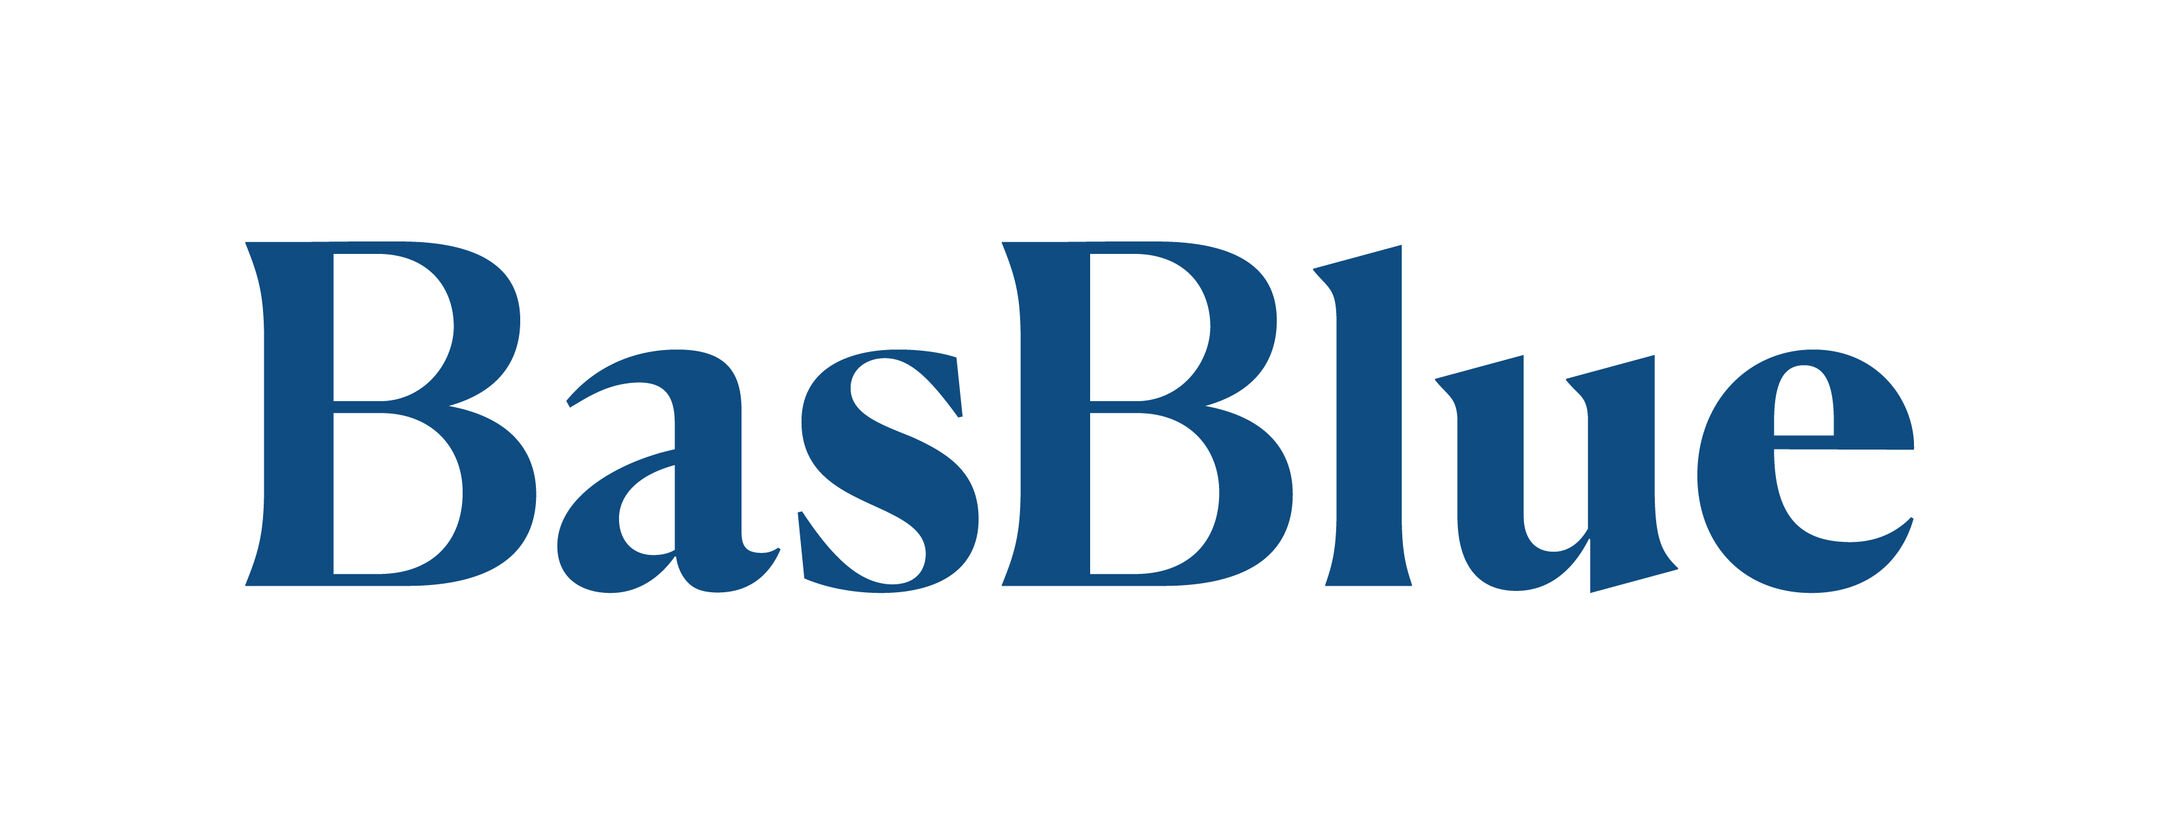 basblue logo.jpg